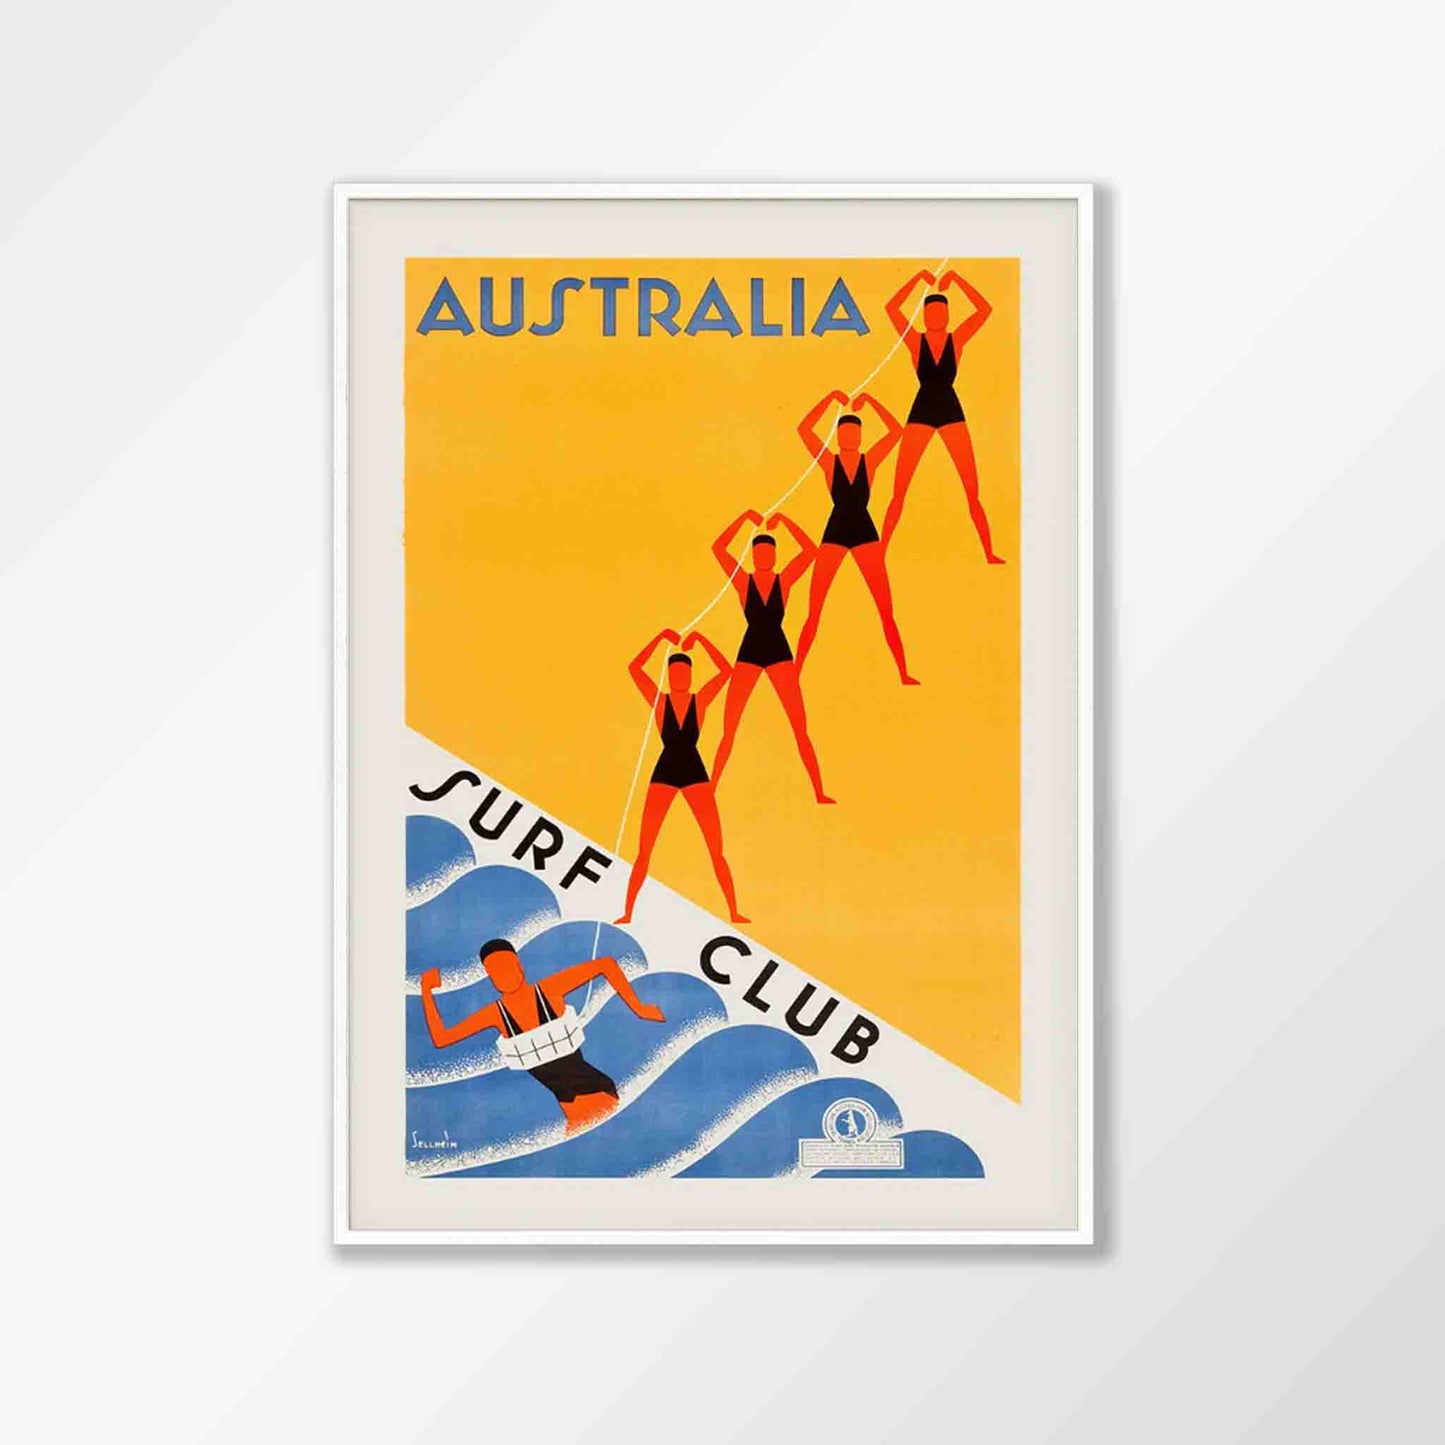 Australia Surf Club